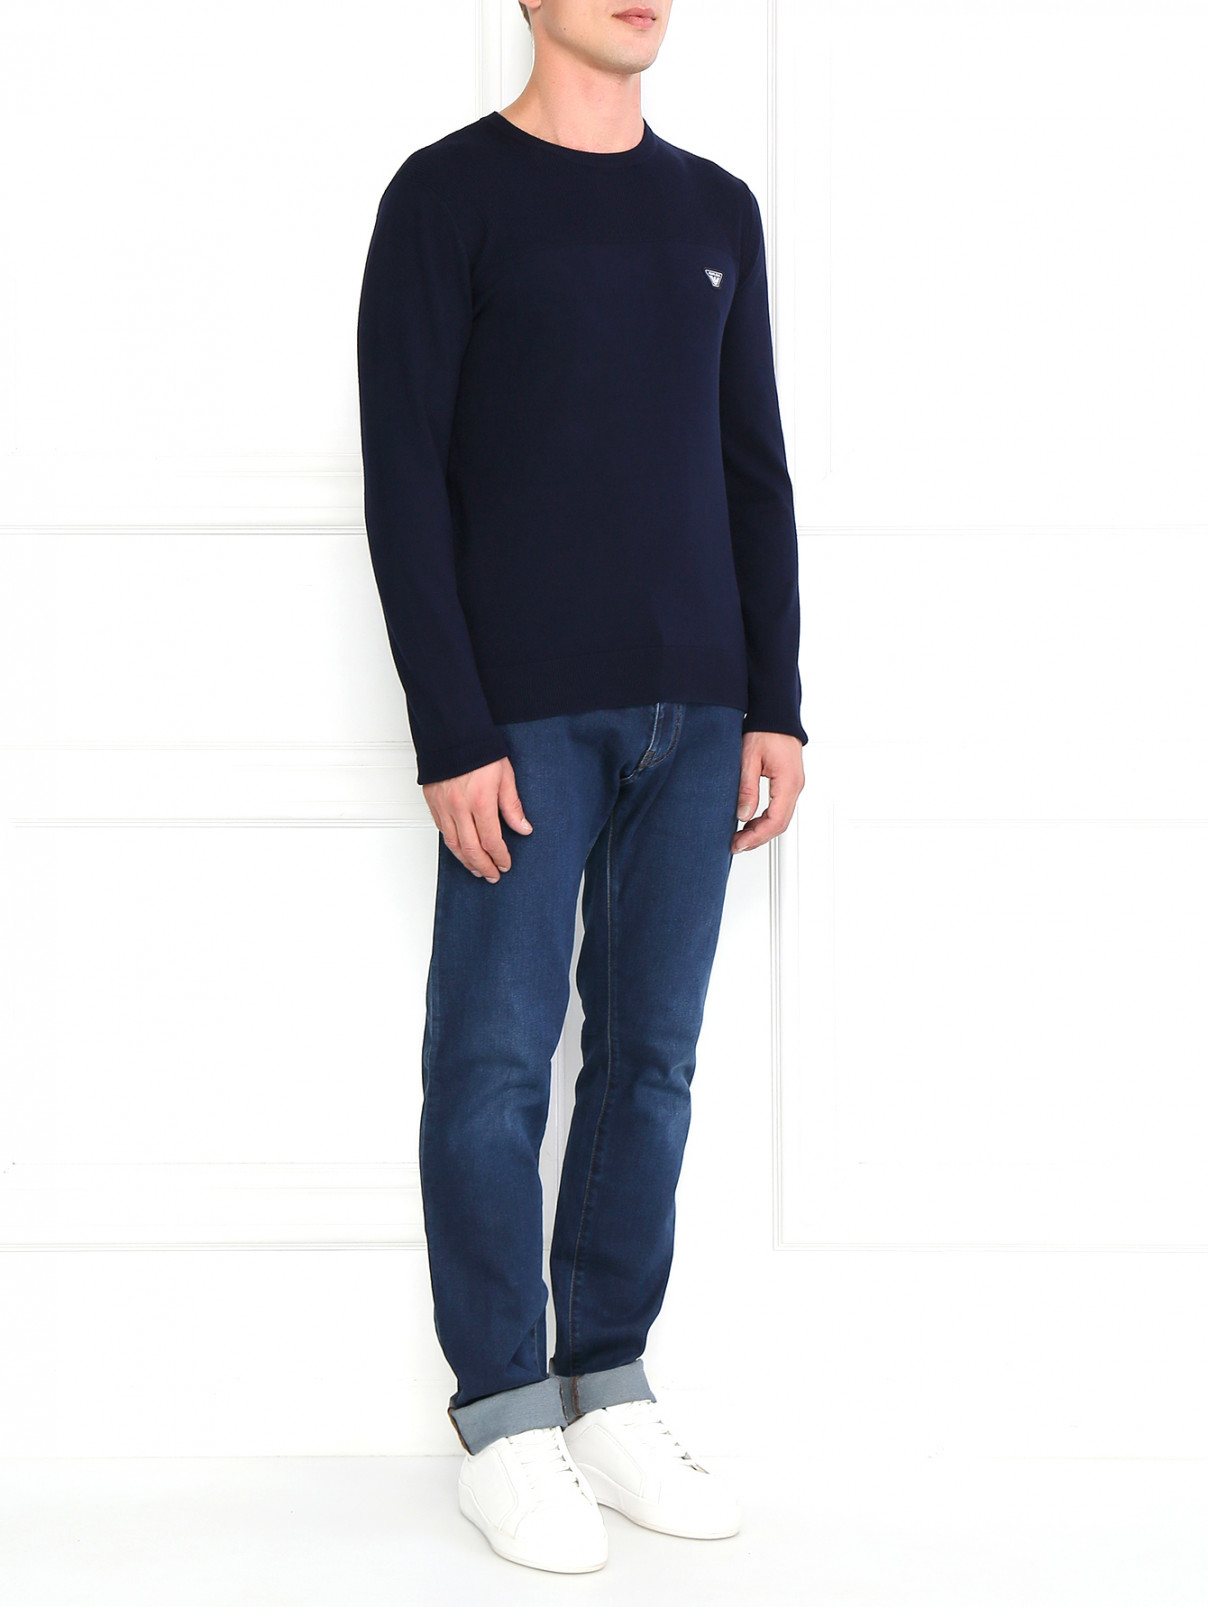 Джемпер с круглым воротом Armani Jeans  –  Модель Общий вид  – Цвет:  Синий